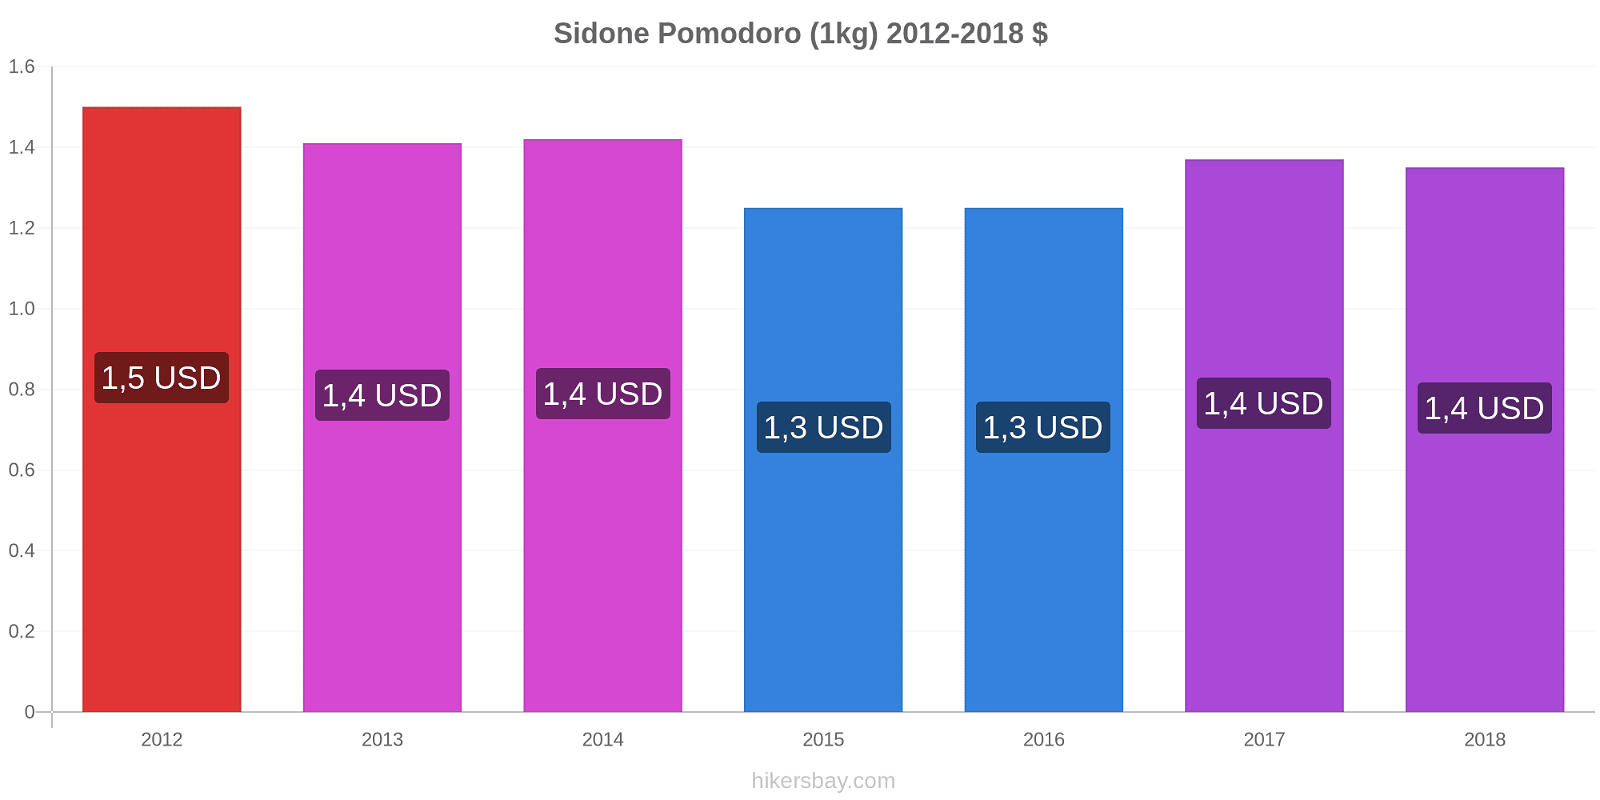 Sidone variazioni di prezzo Pomodoro (1kg) hikersbay.com